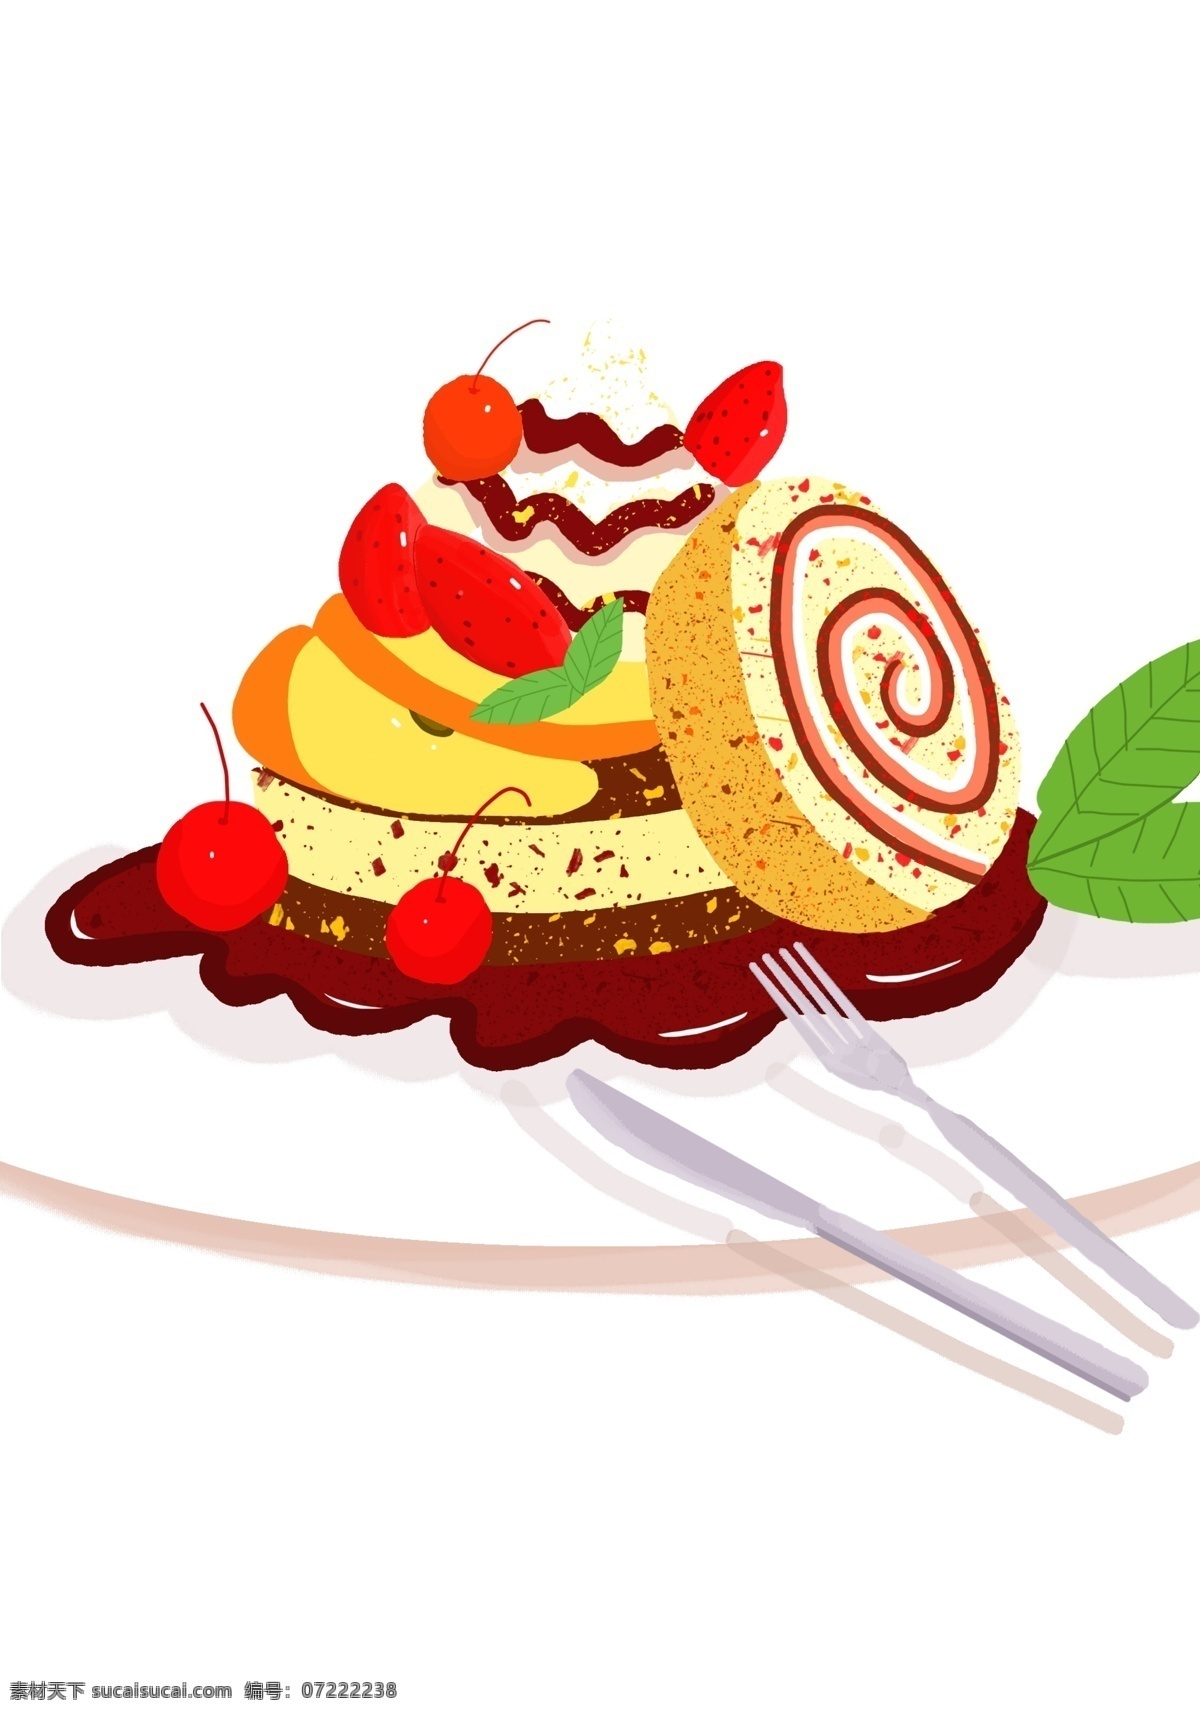 手绘 清香 包卷 装饰 元素 食物 美食 刀叉 草莓 面包 白色盘子 装饰元素 面点